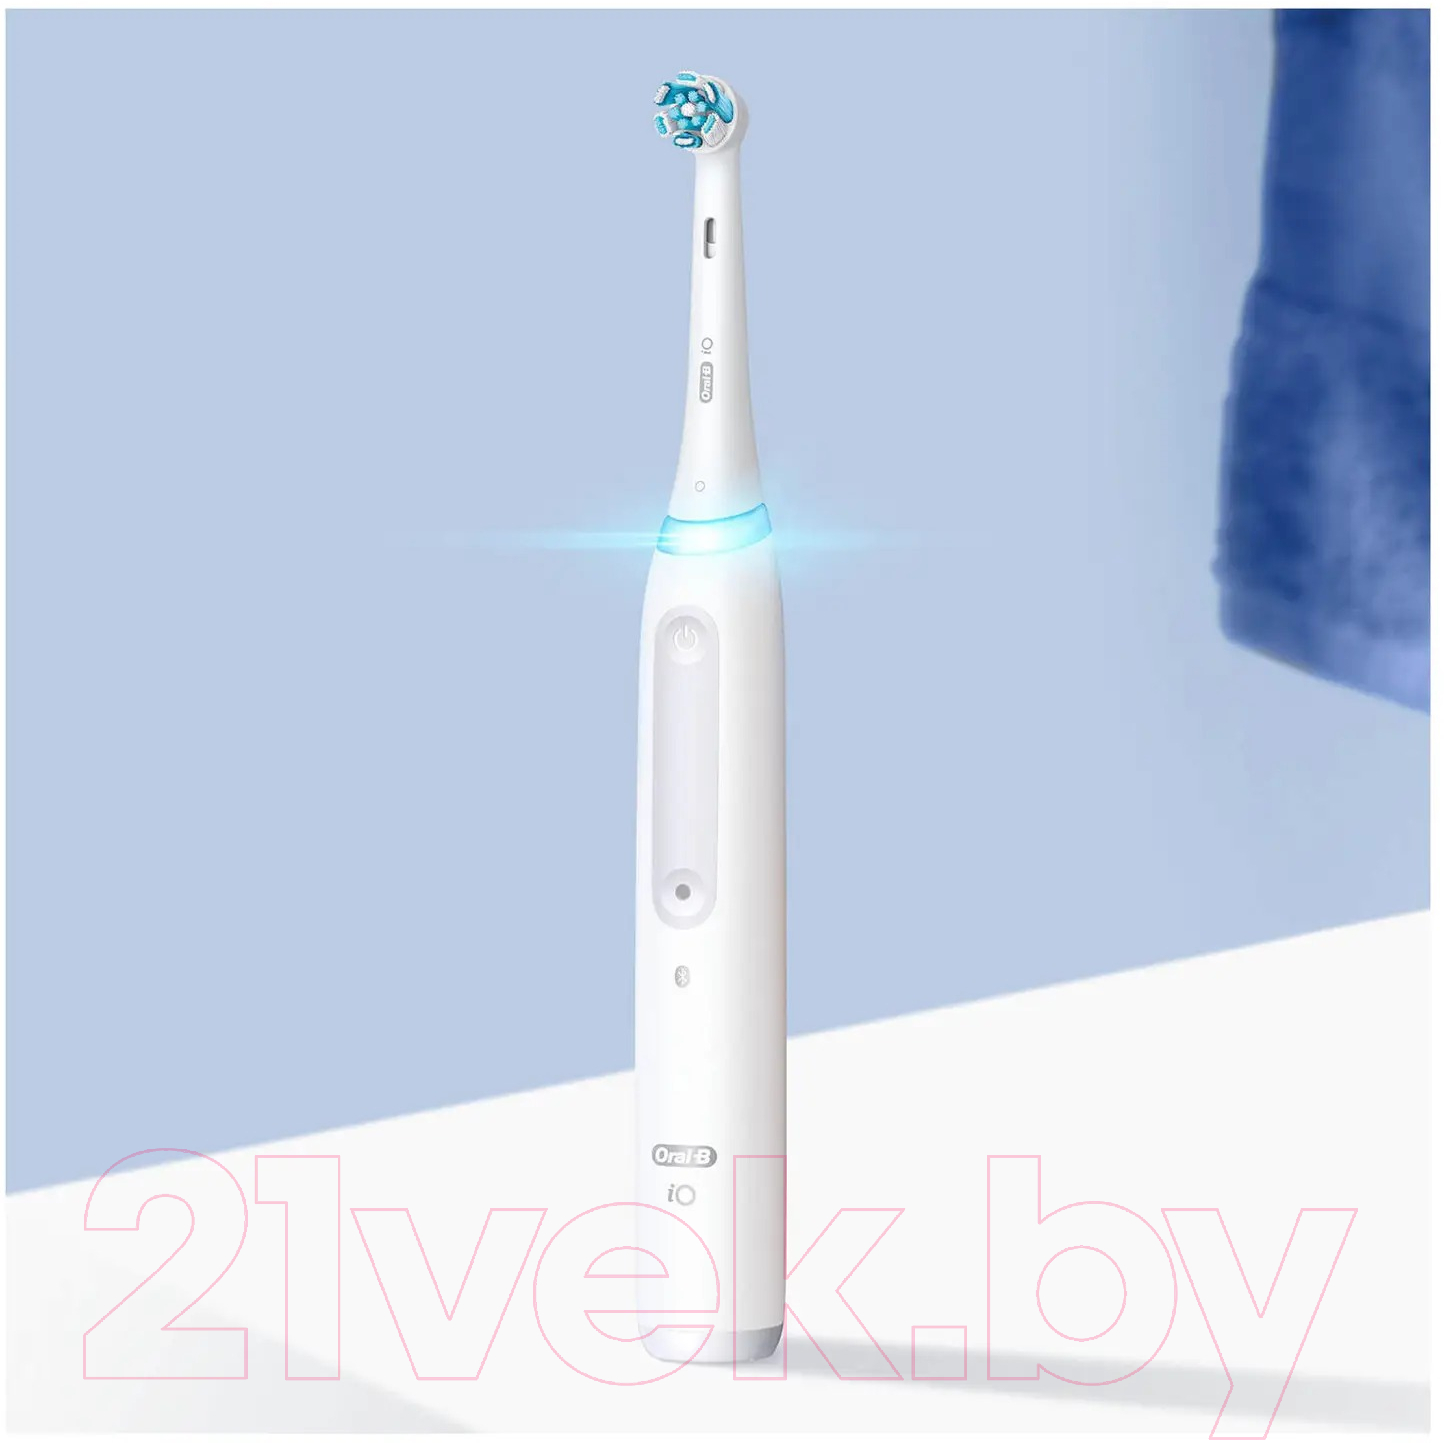 Электрическая зубная щетка Oral-B iO4 Magnetic White Travcase